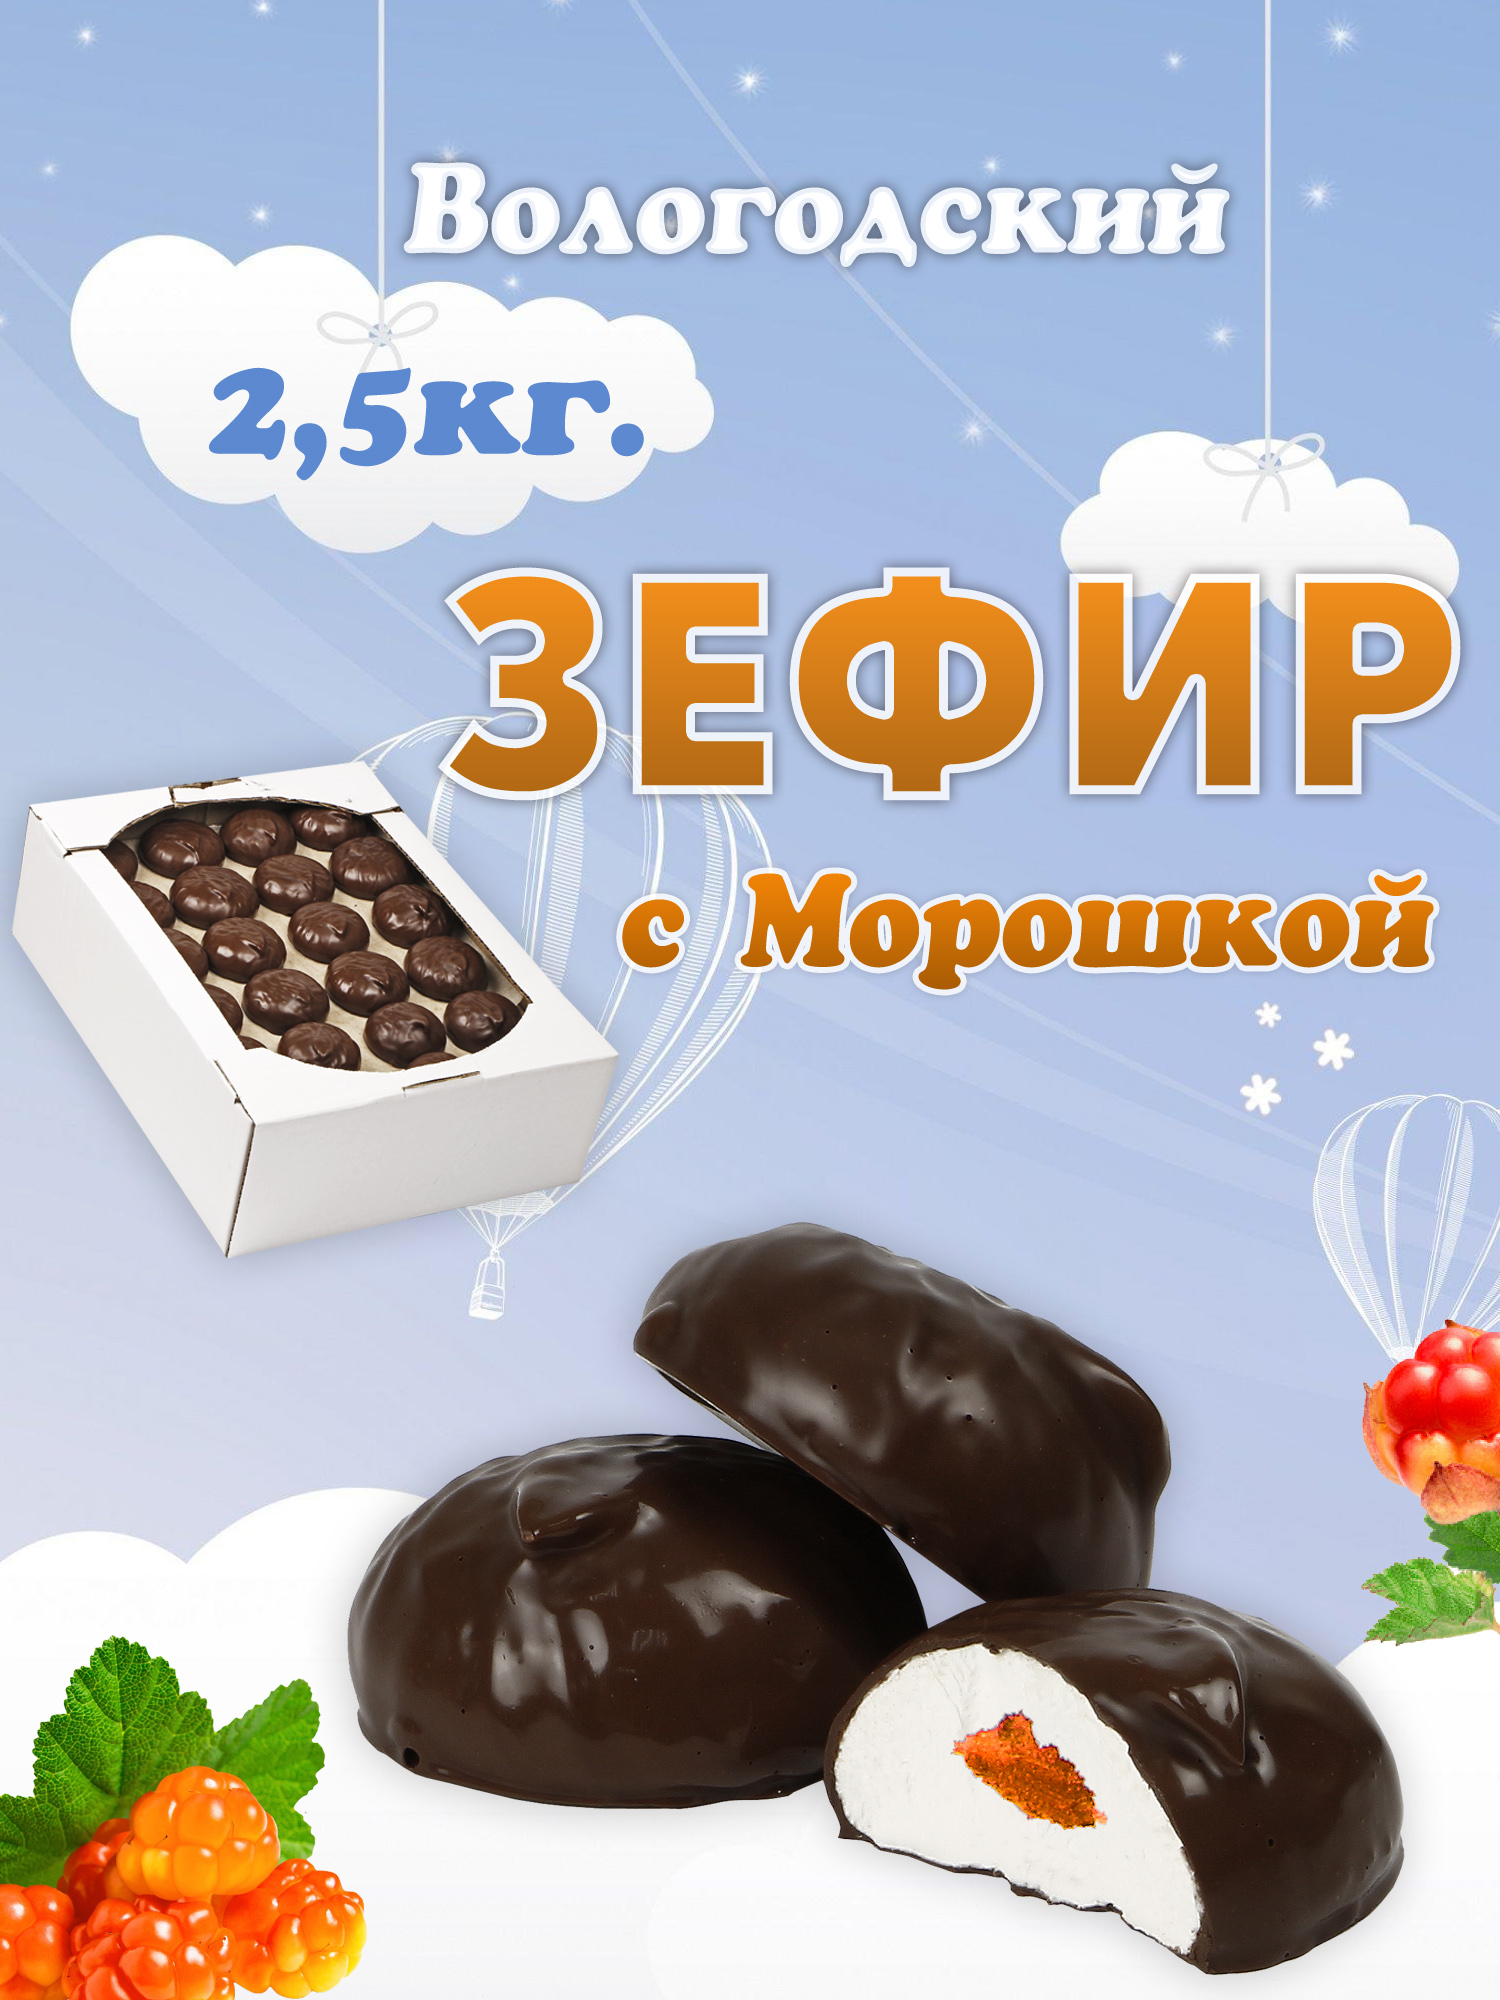 Зефир Вологодский в шоколаде с Морошкой 2,5кг.  .jpg